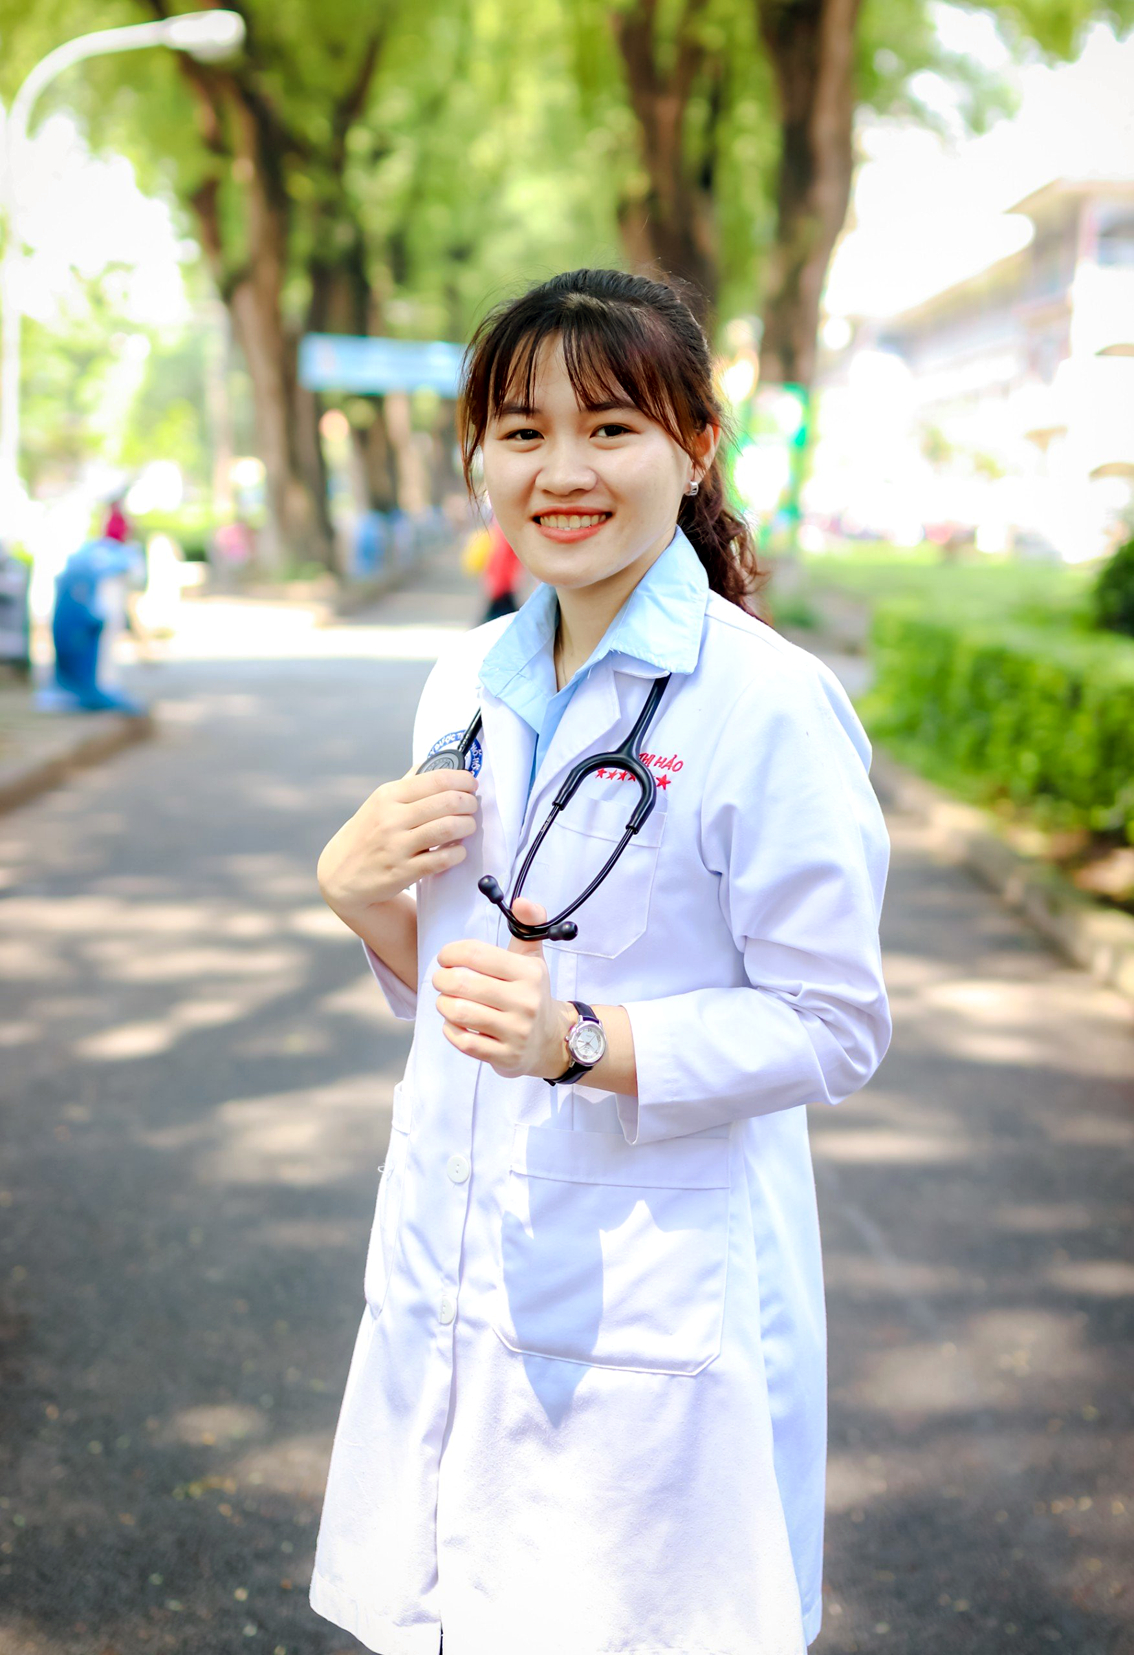 Nguyễn Thị Hảo tốt nghiệp ngành y loại xuất sắc